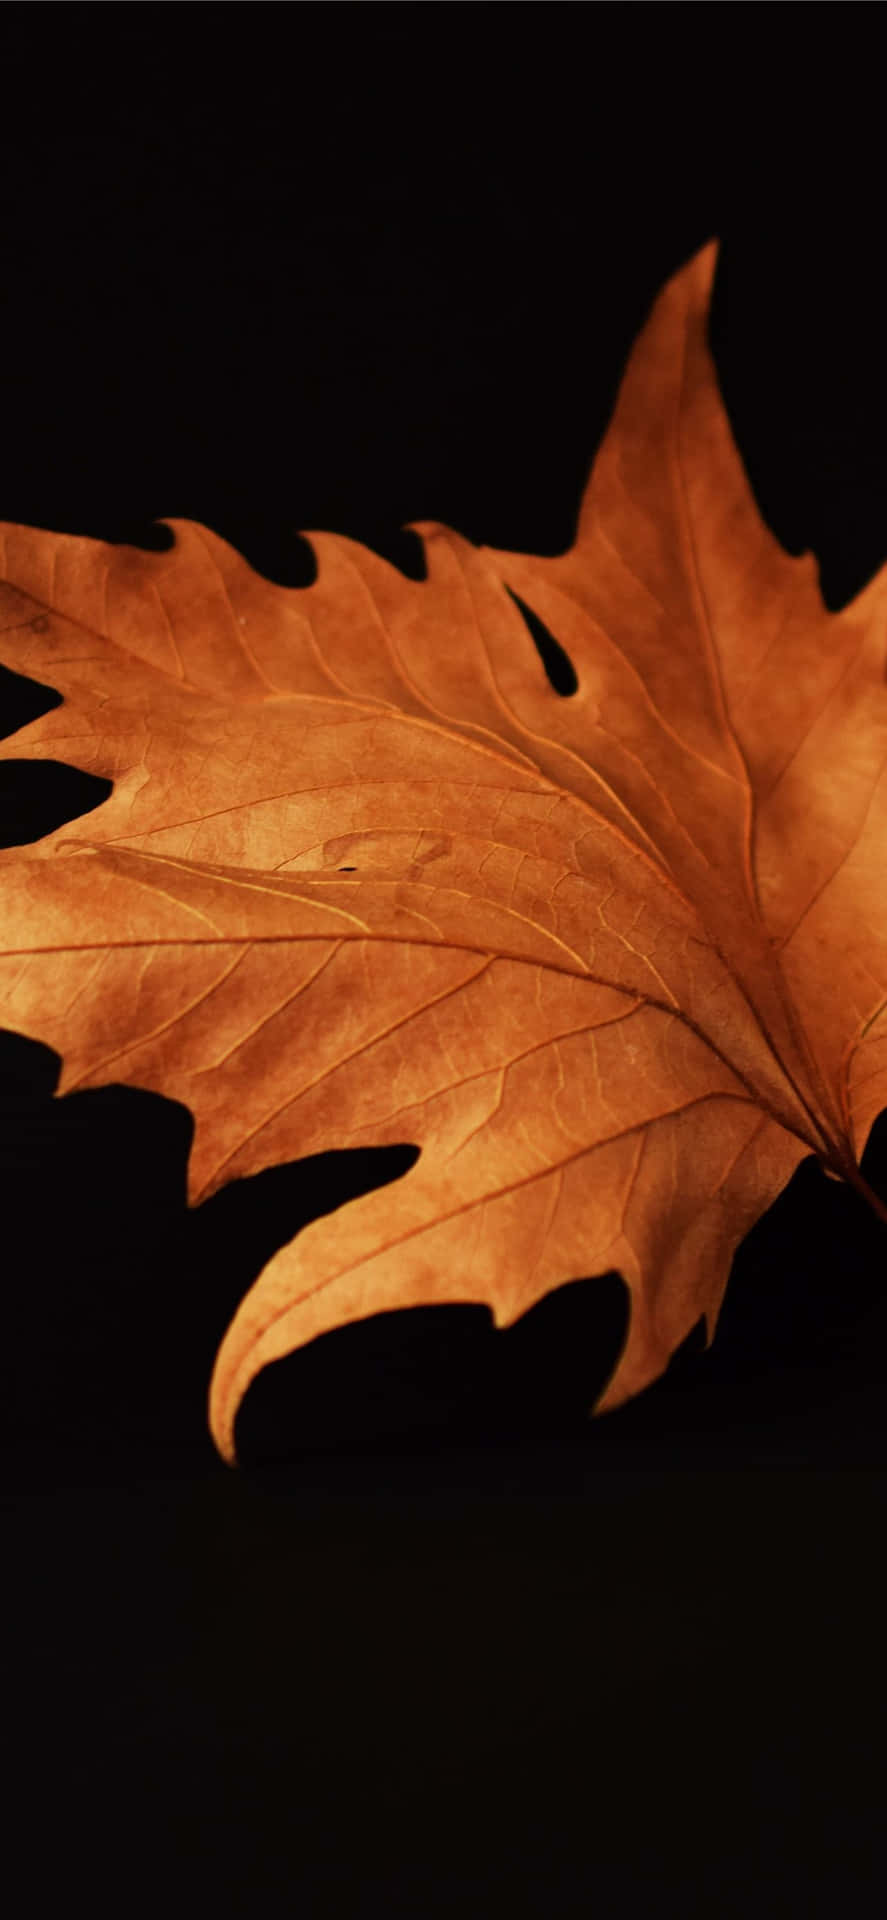 Genießensie Den Atemberaubenden Ausblick Auf Herbstliche Blätter Und Die Perfekte Beleuchtung In Diesem Hintergrundbild. Wallpaper